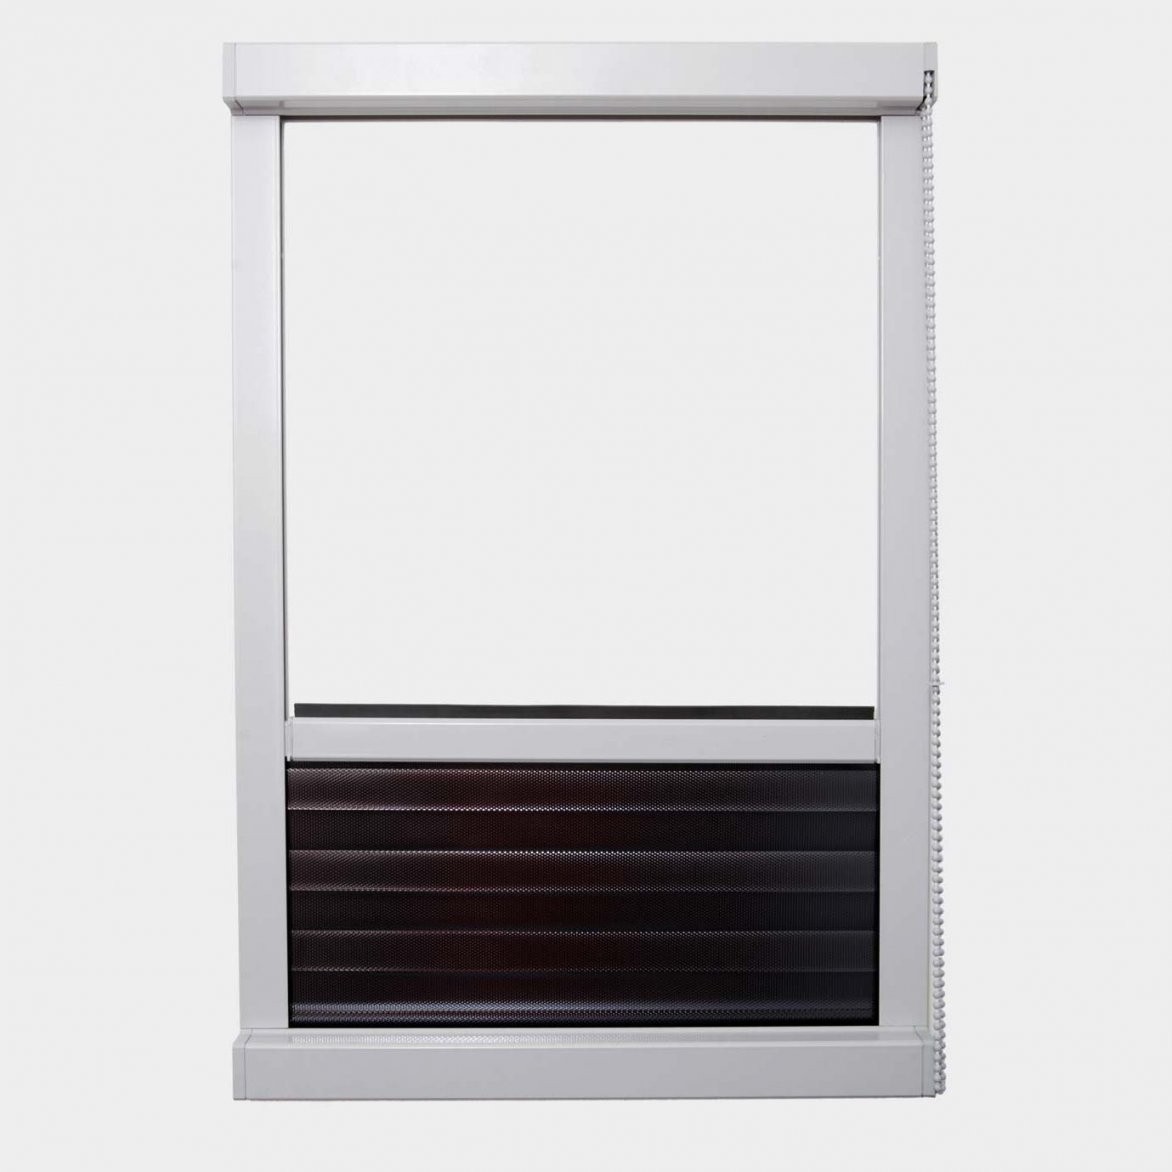 Innenrollos Am Fenster  Hochreflektierend  Vom Hersteller Rollos von Fenster Rollos Für Innen Bild